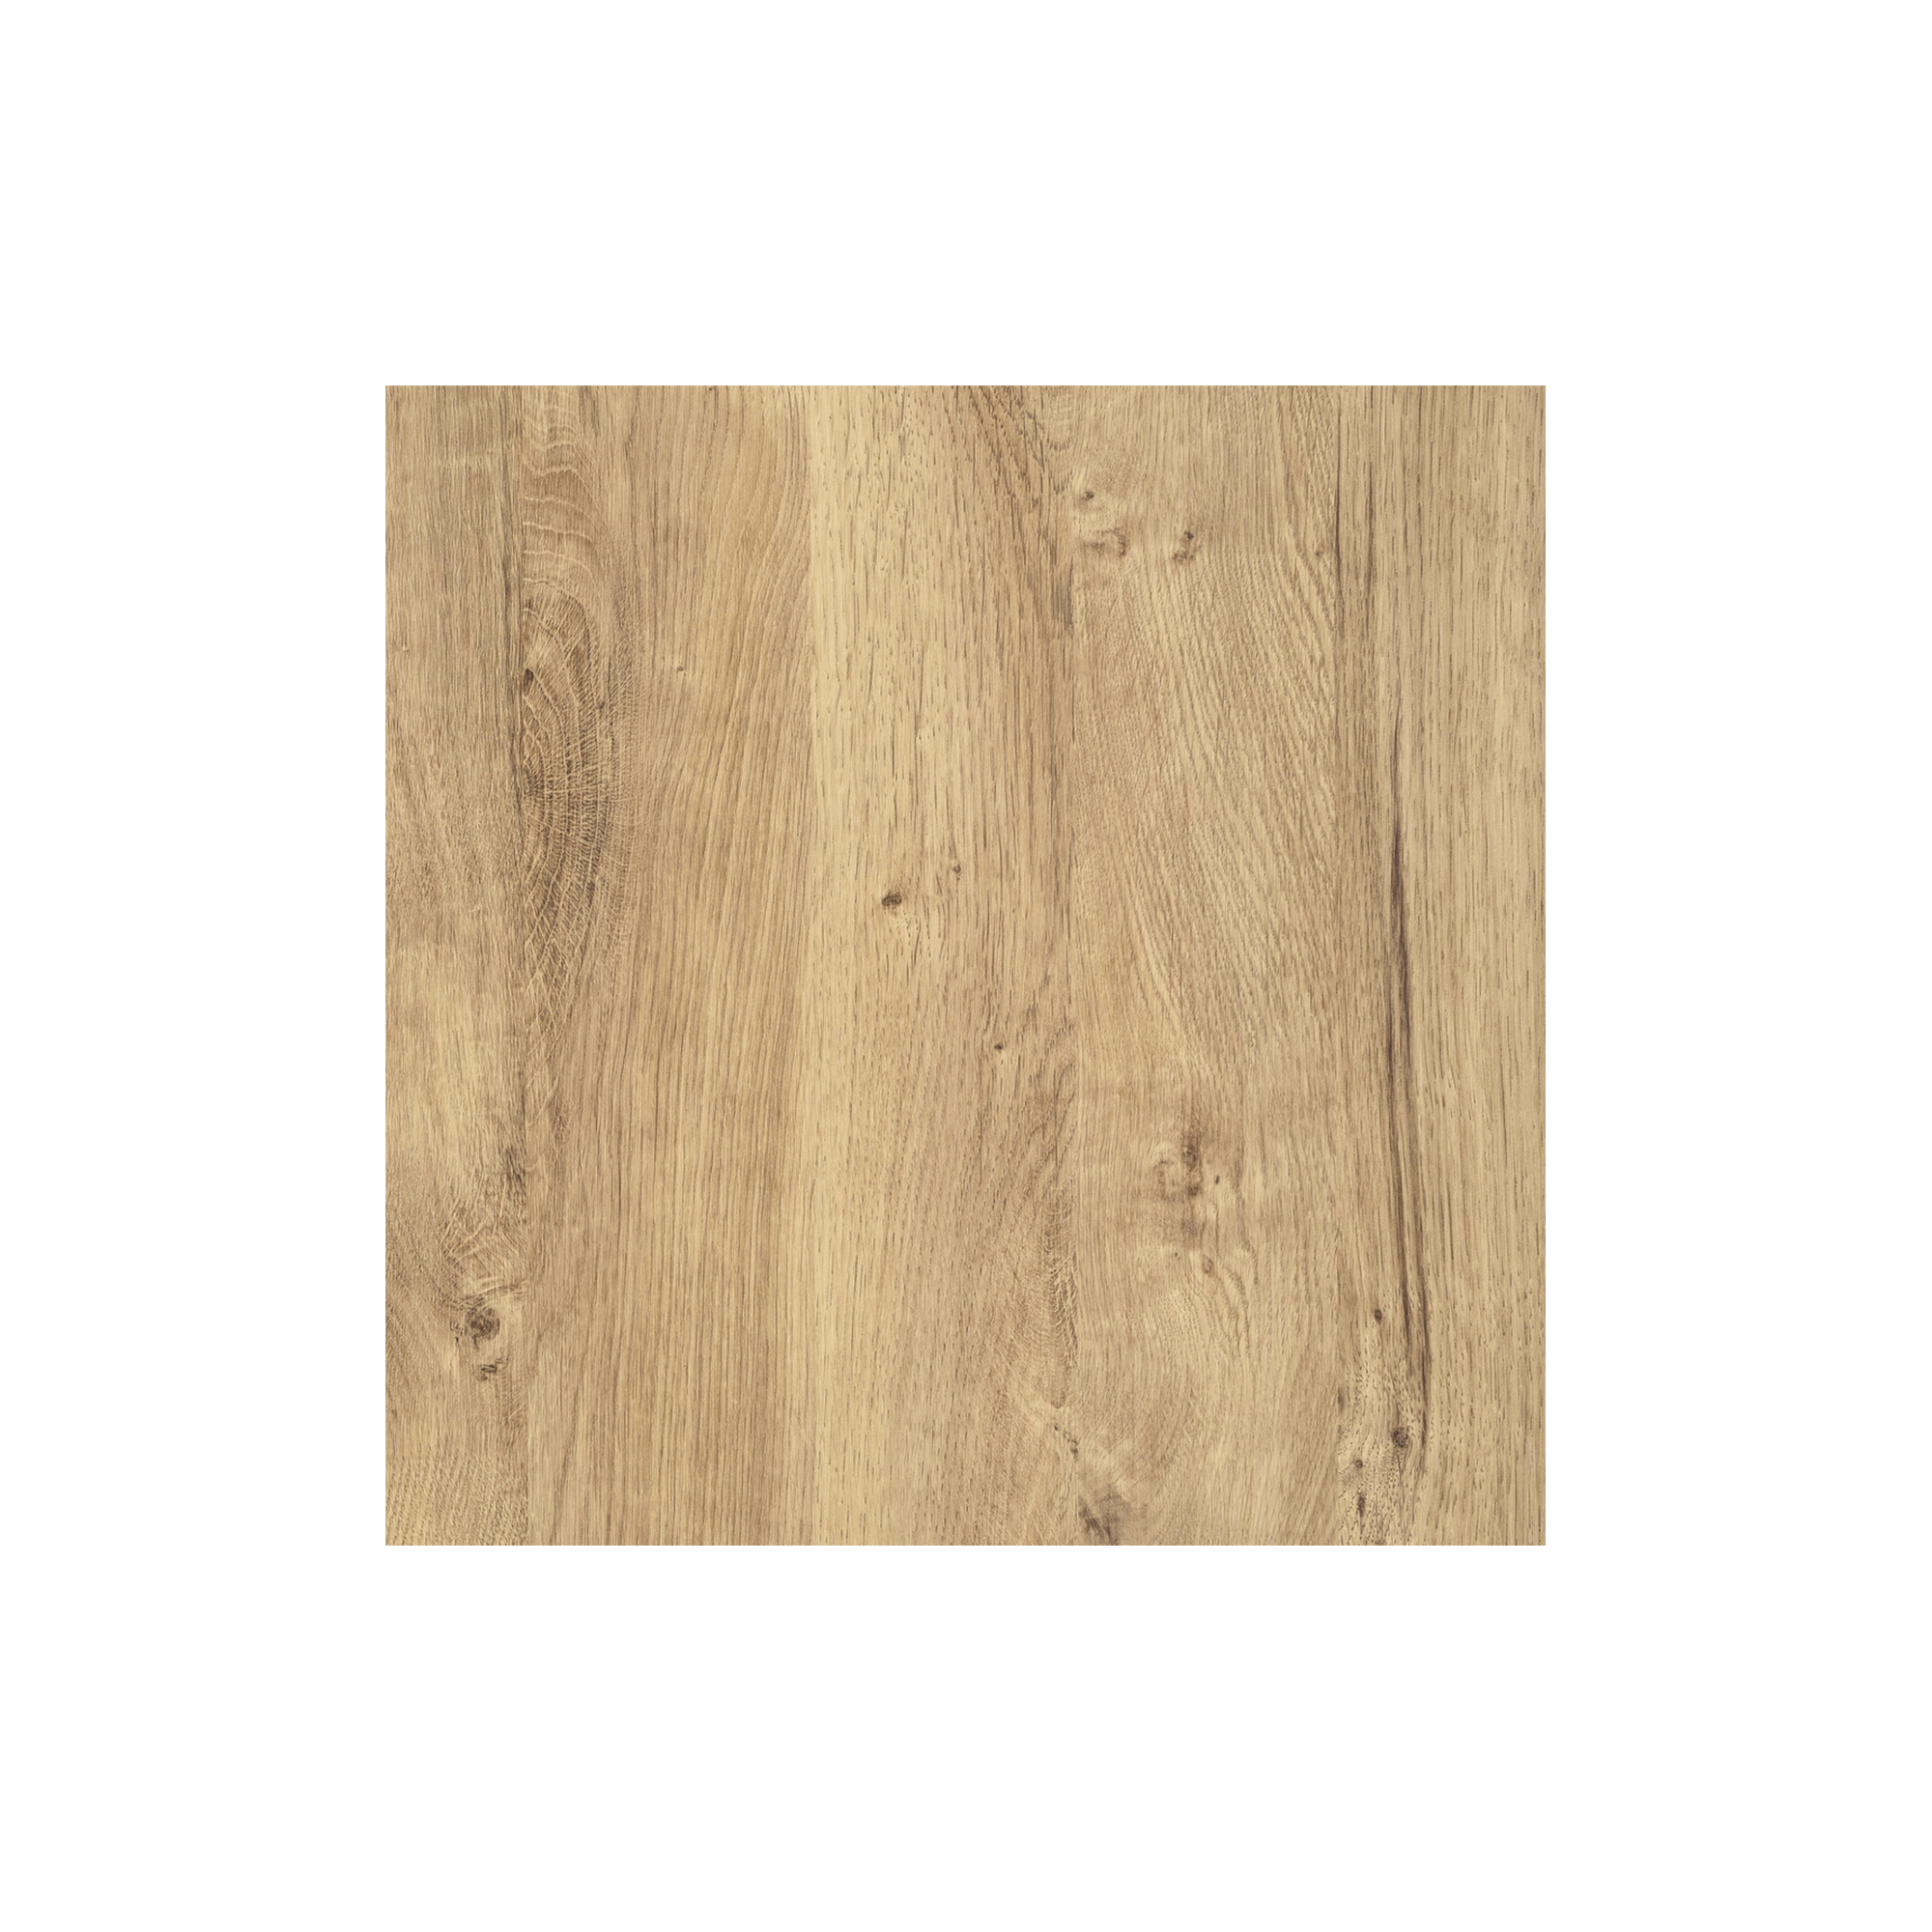 d-c-fix vinilo adhesivo muebles Madera de nácar blanco efecto madera  autoadhesivo impermeable decorativo para cocina, armario, puerta, mesa  papel